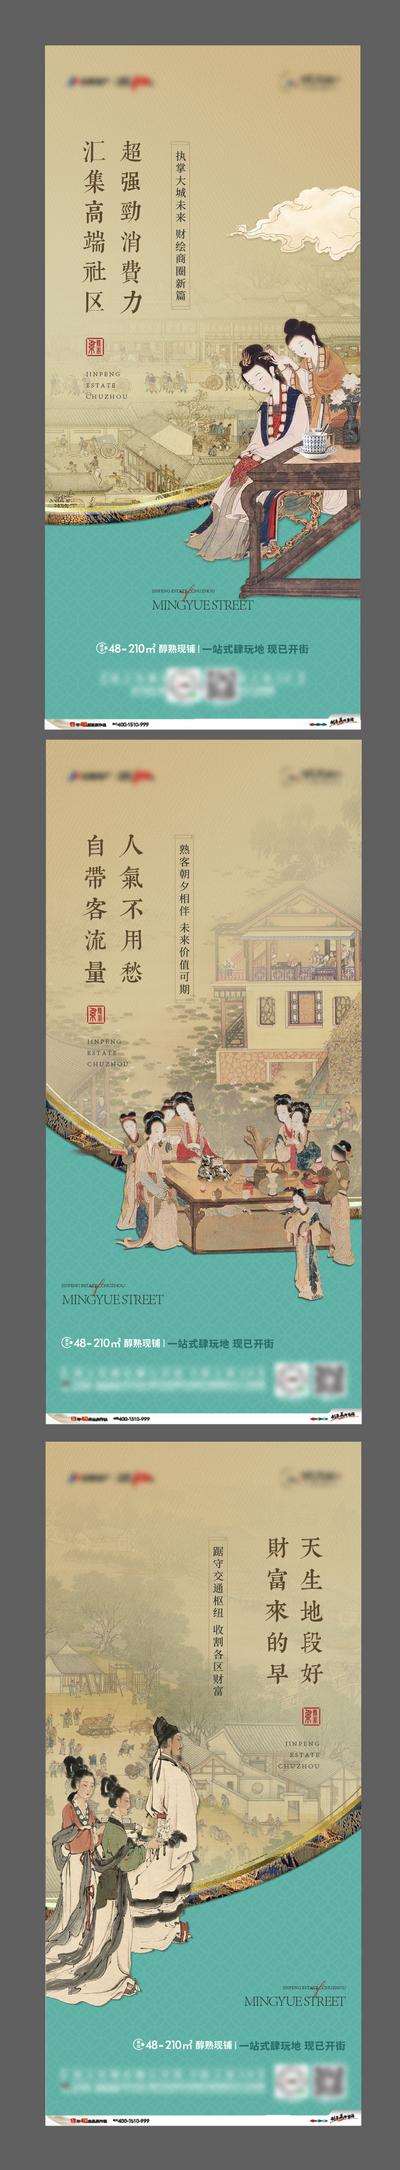 南门网 海报 房地产 商业街 价值点 中式 中国风 古典 仕女图  古人 系列 